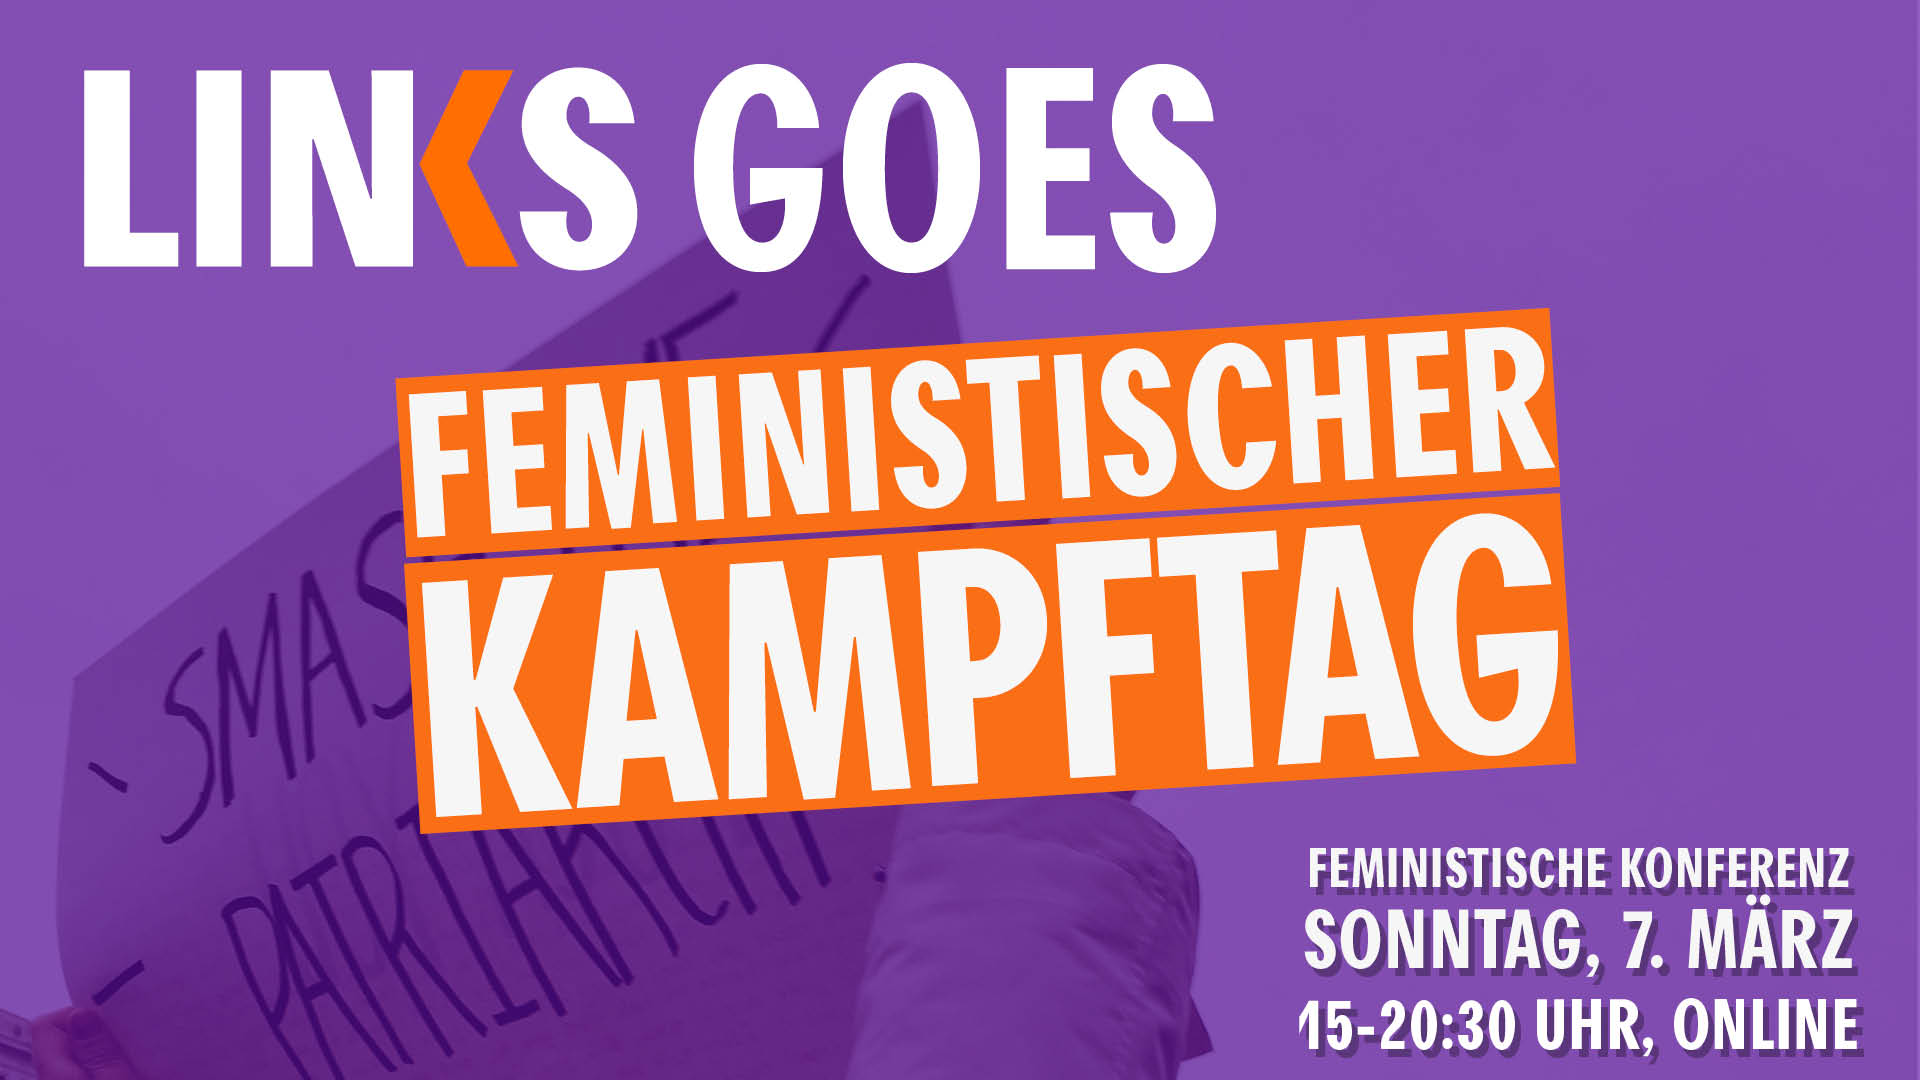 LINKS goes Feministischer Kampftag